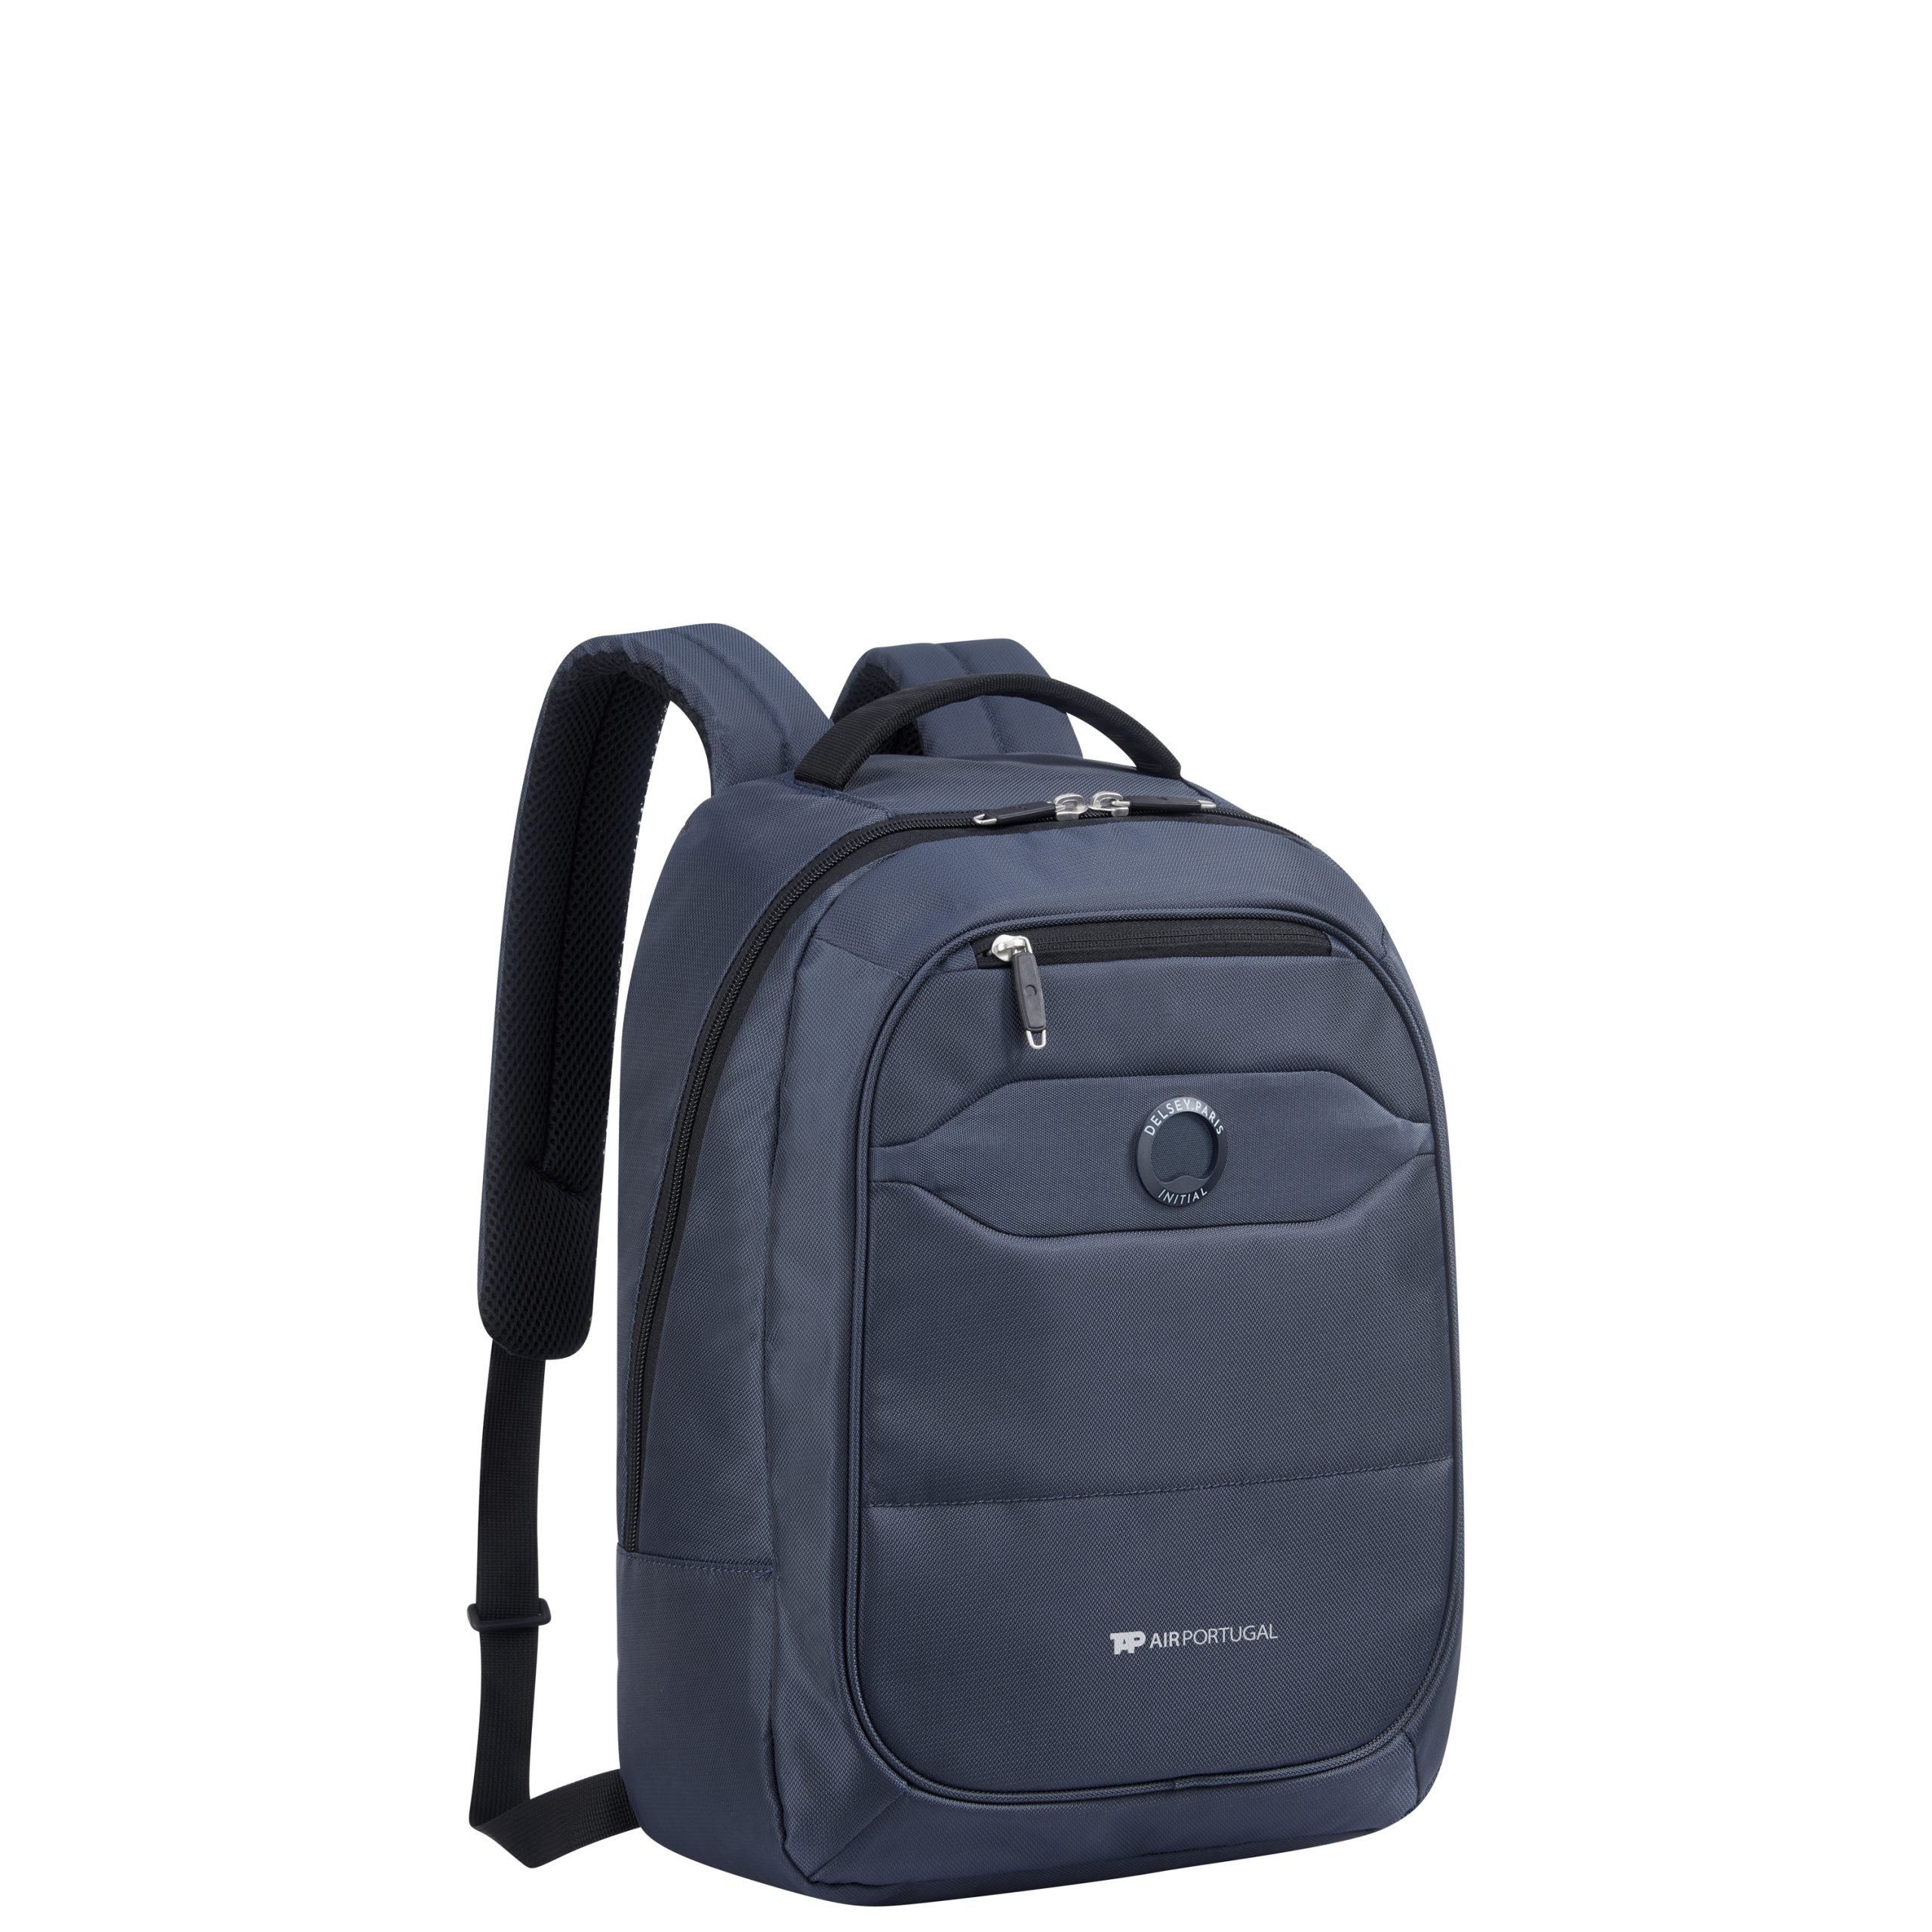 TAP Delsey Easytrip Backpack